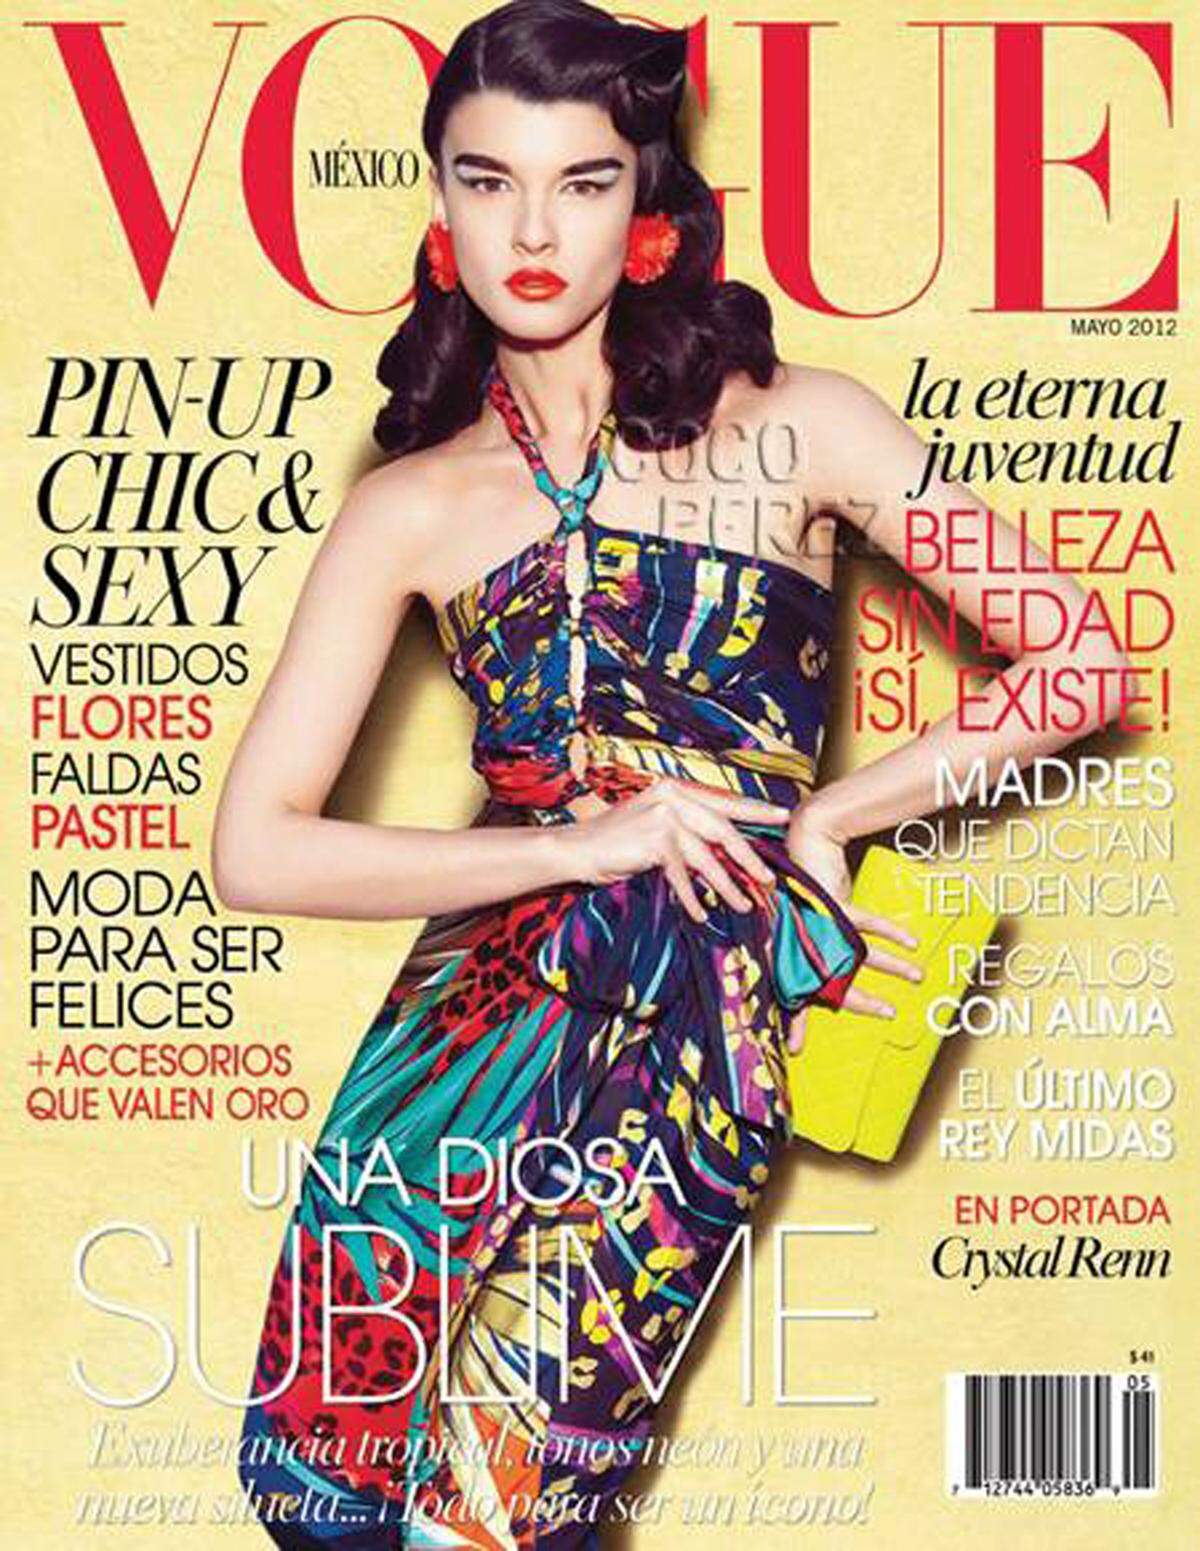 Der Erfolg gibt ihr wohl Recht. Aktuell ziert Renn das Cover der lateinamerikanischen und mexikanischen "Vogue". (Ausgabe Mai 2012)